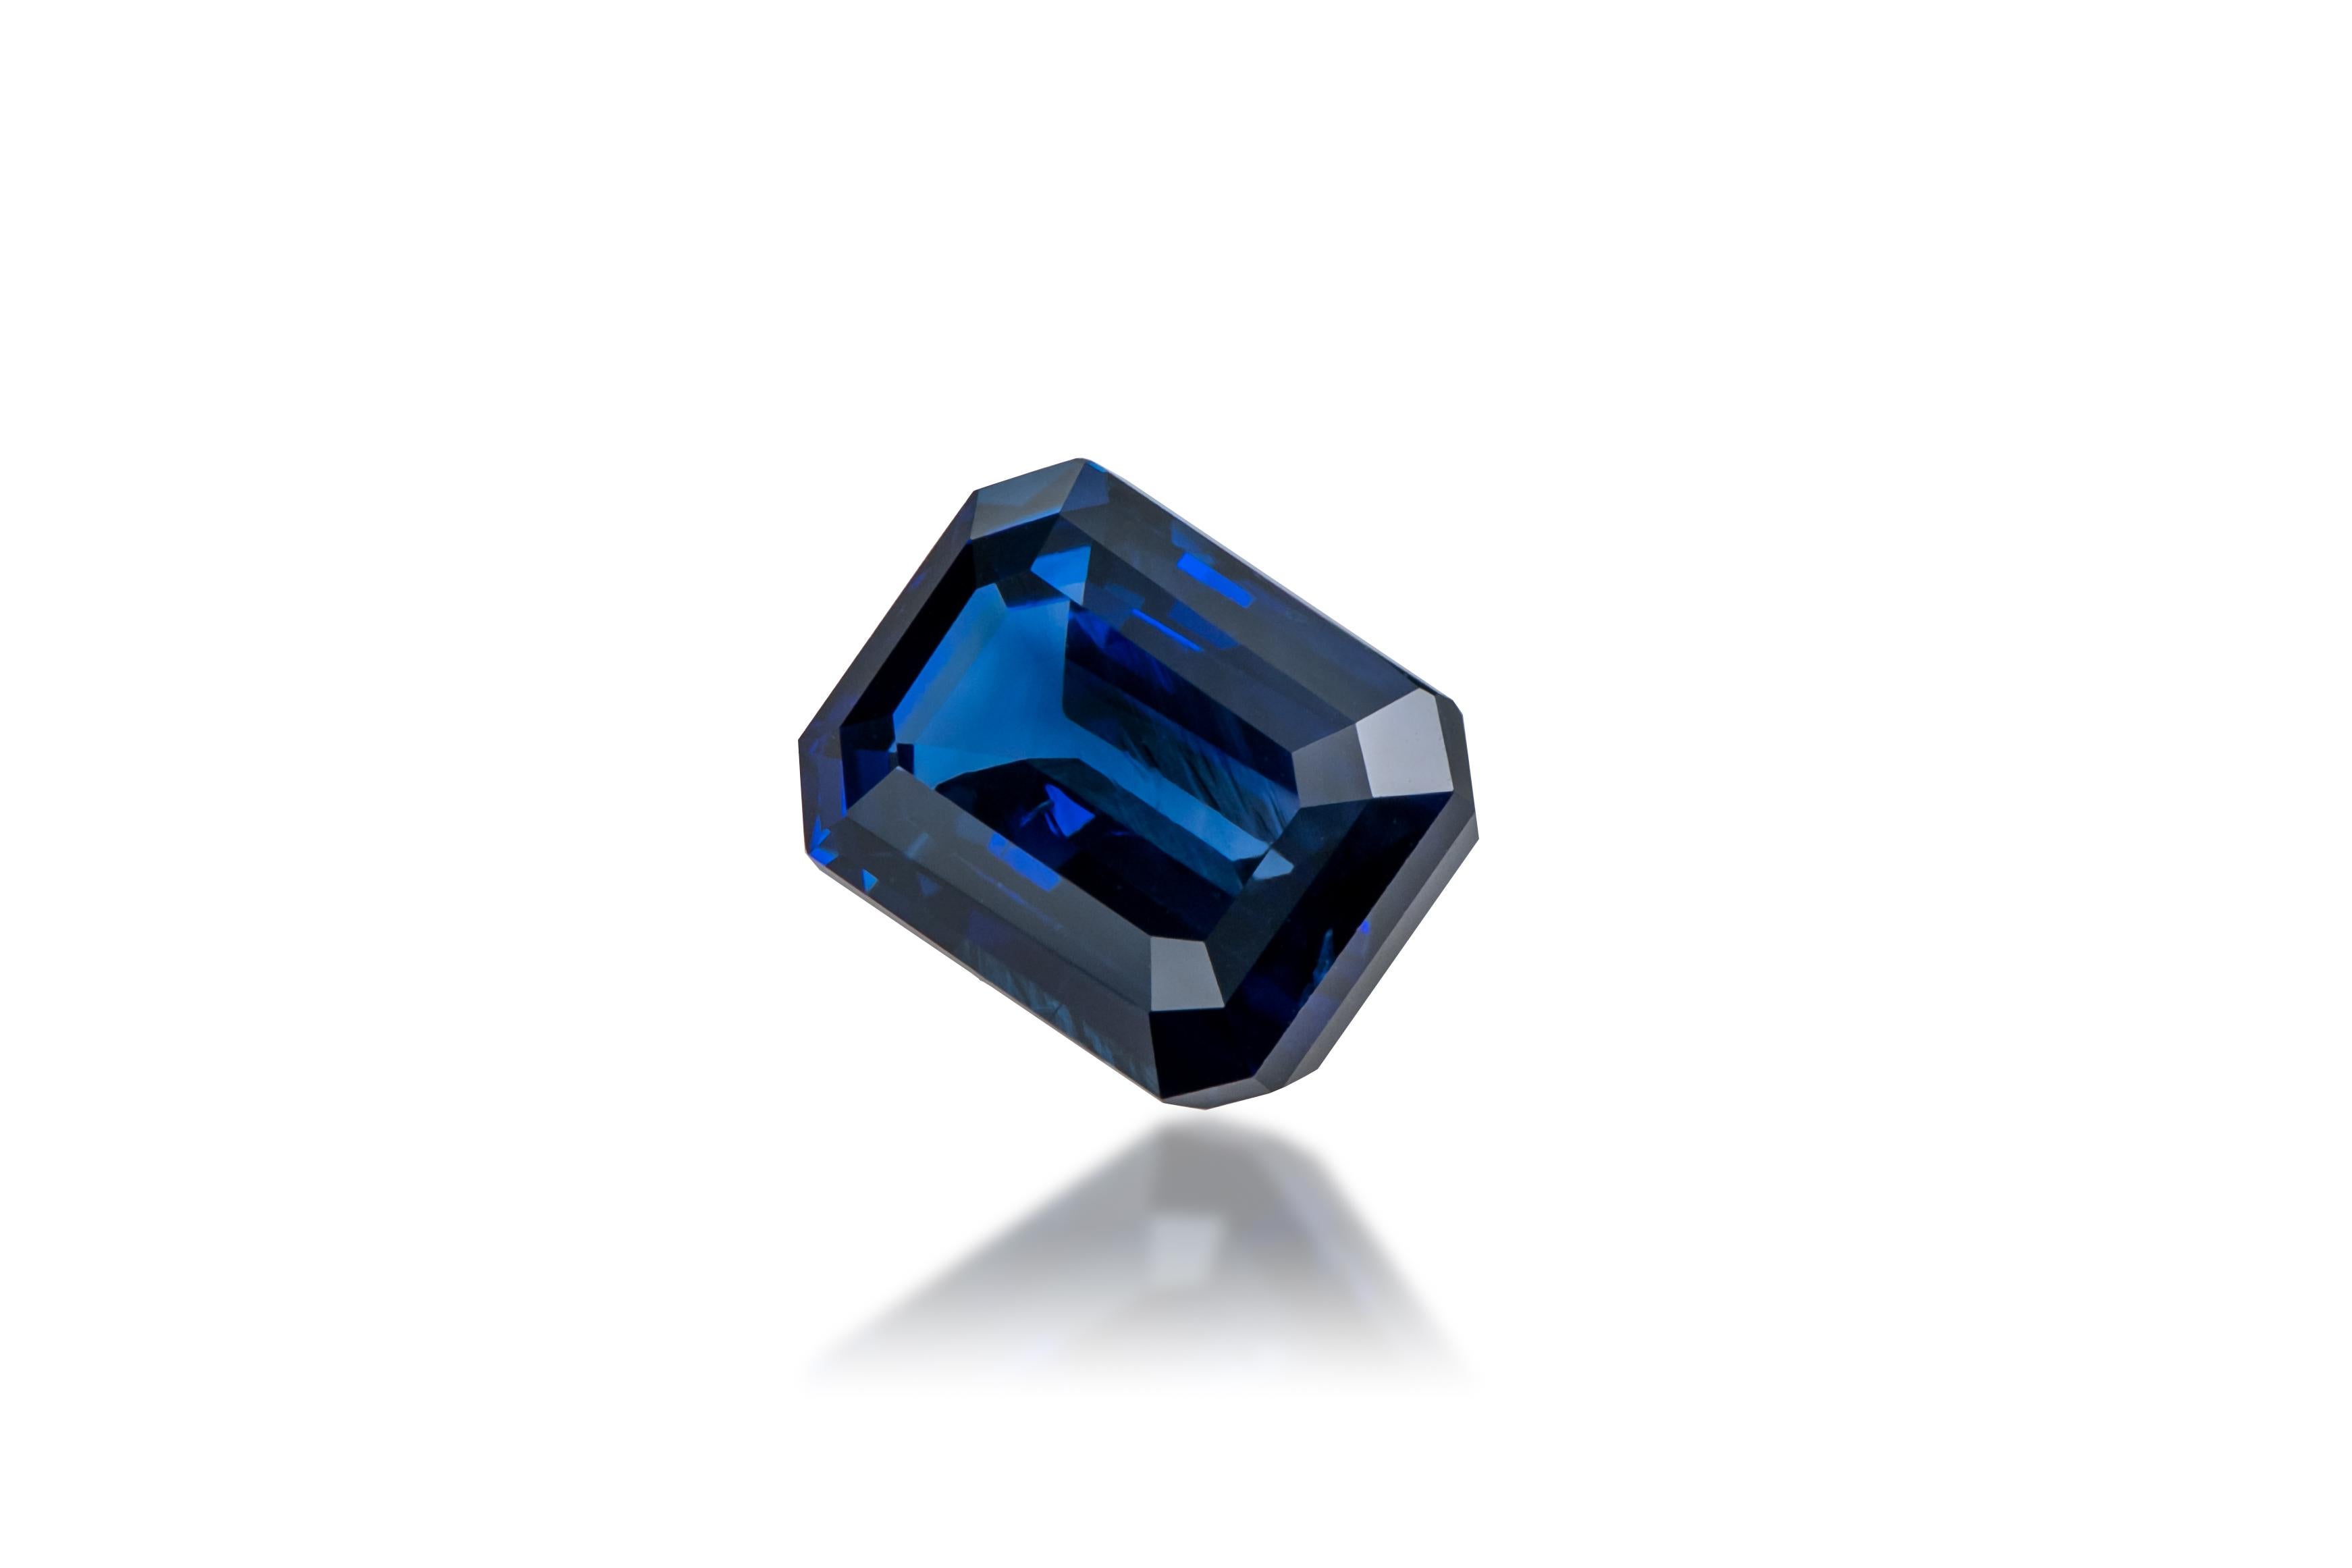 Saphir: Lebendiger/Royalblauer Saphir
Herkunft: Sri Lanka
Form: Achteckiger Schliff
Karat-Gewicht: 4.00 Karat
Abmessungen: 10,26 x 7,32 x 4,64 mm

Dieser schöne Vivid/Royal Sapphire hat eine schöne blaue Farbe und ist unerhitzt.
Er ist sauber und